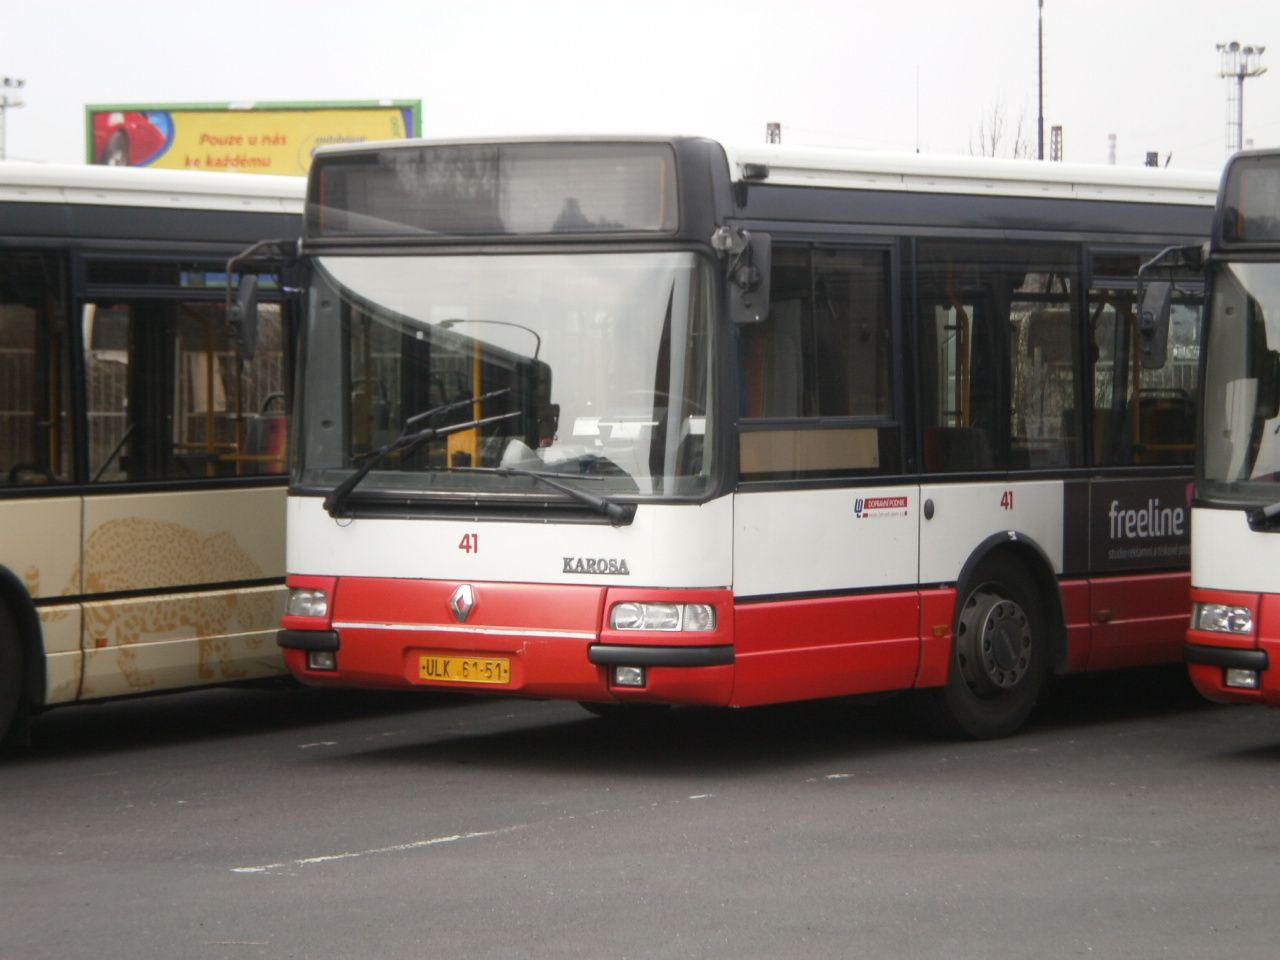 41 je jeden ze citybus z posledn dodvky z r. 1999